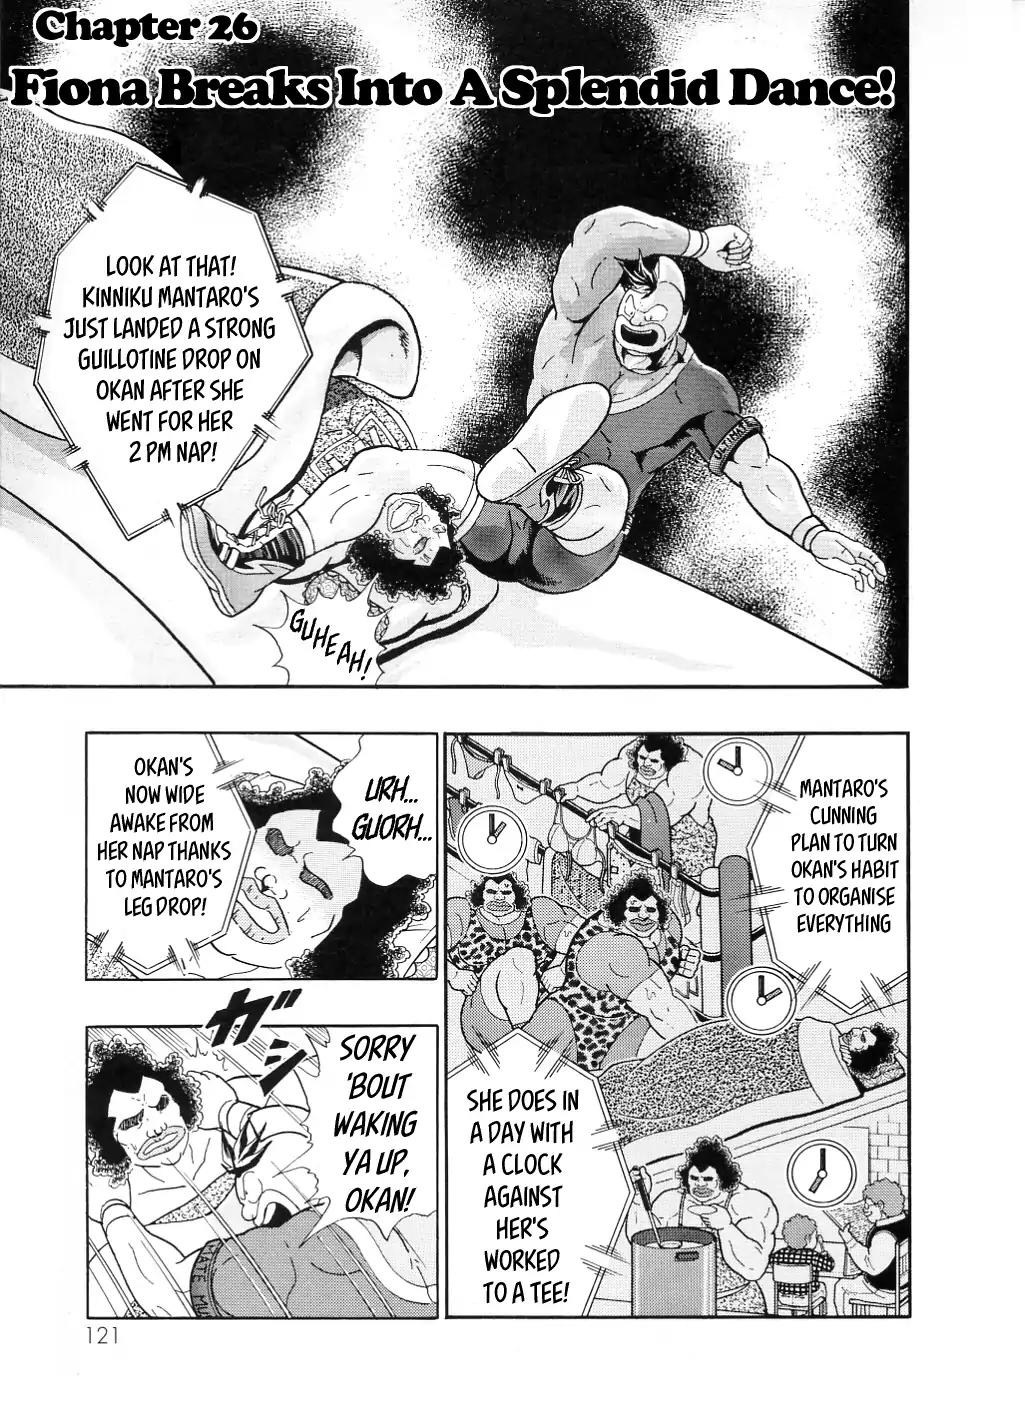 Kinnikuman II Sei - All Choujin Daishingeki Vol.2 Chapter 26: